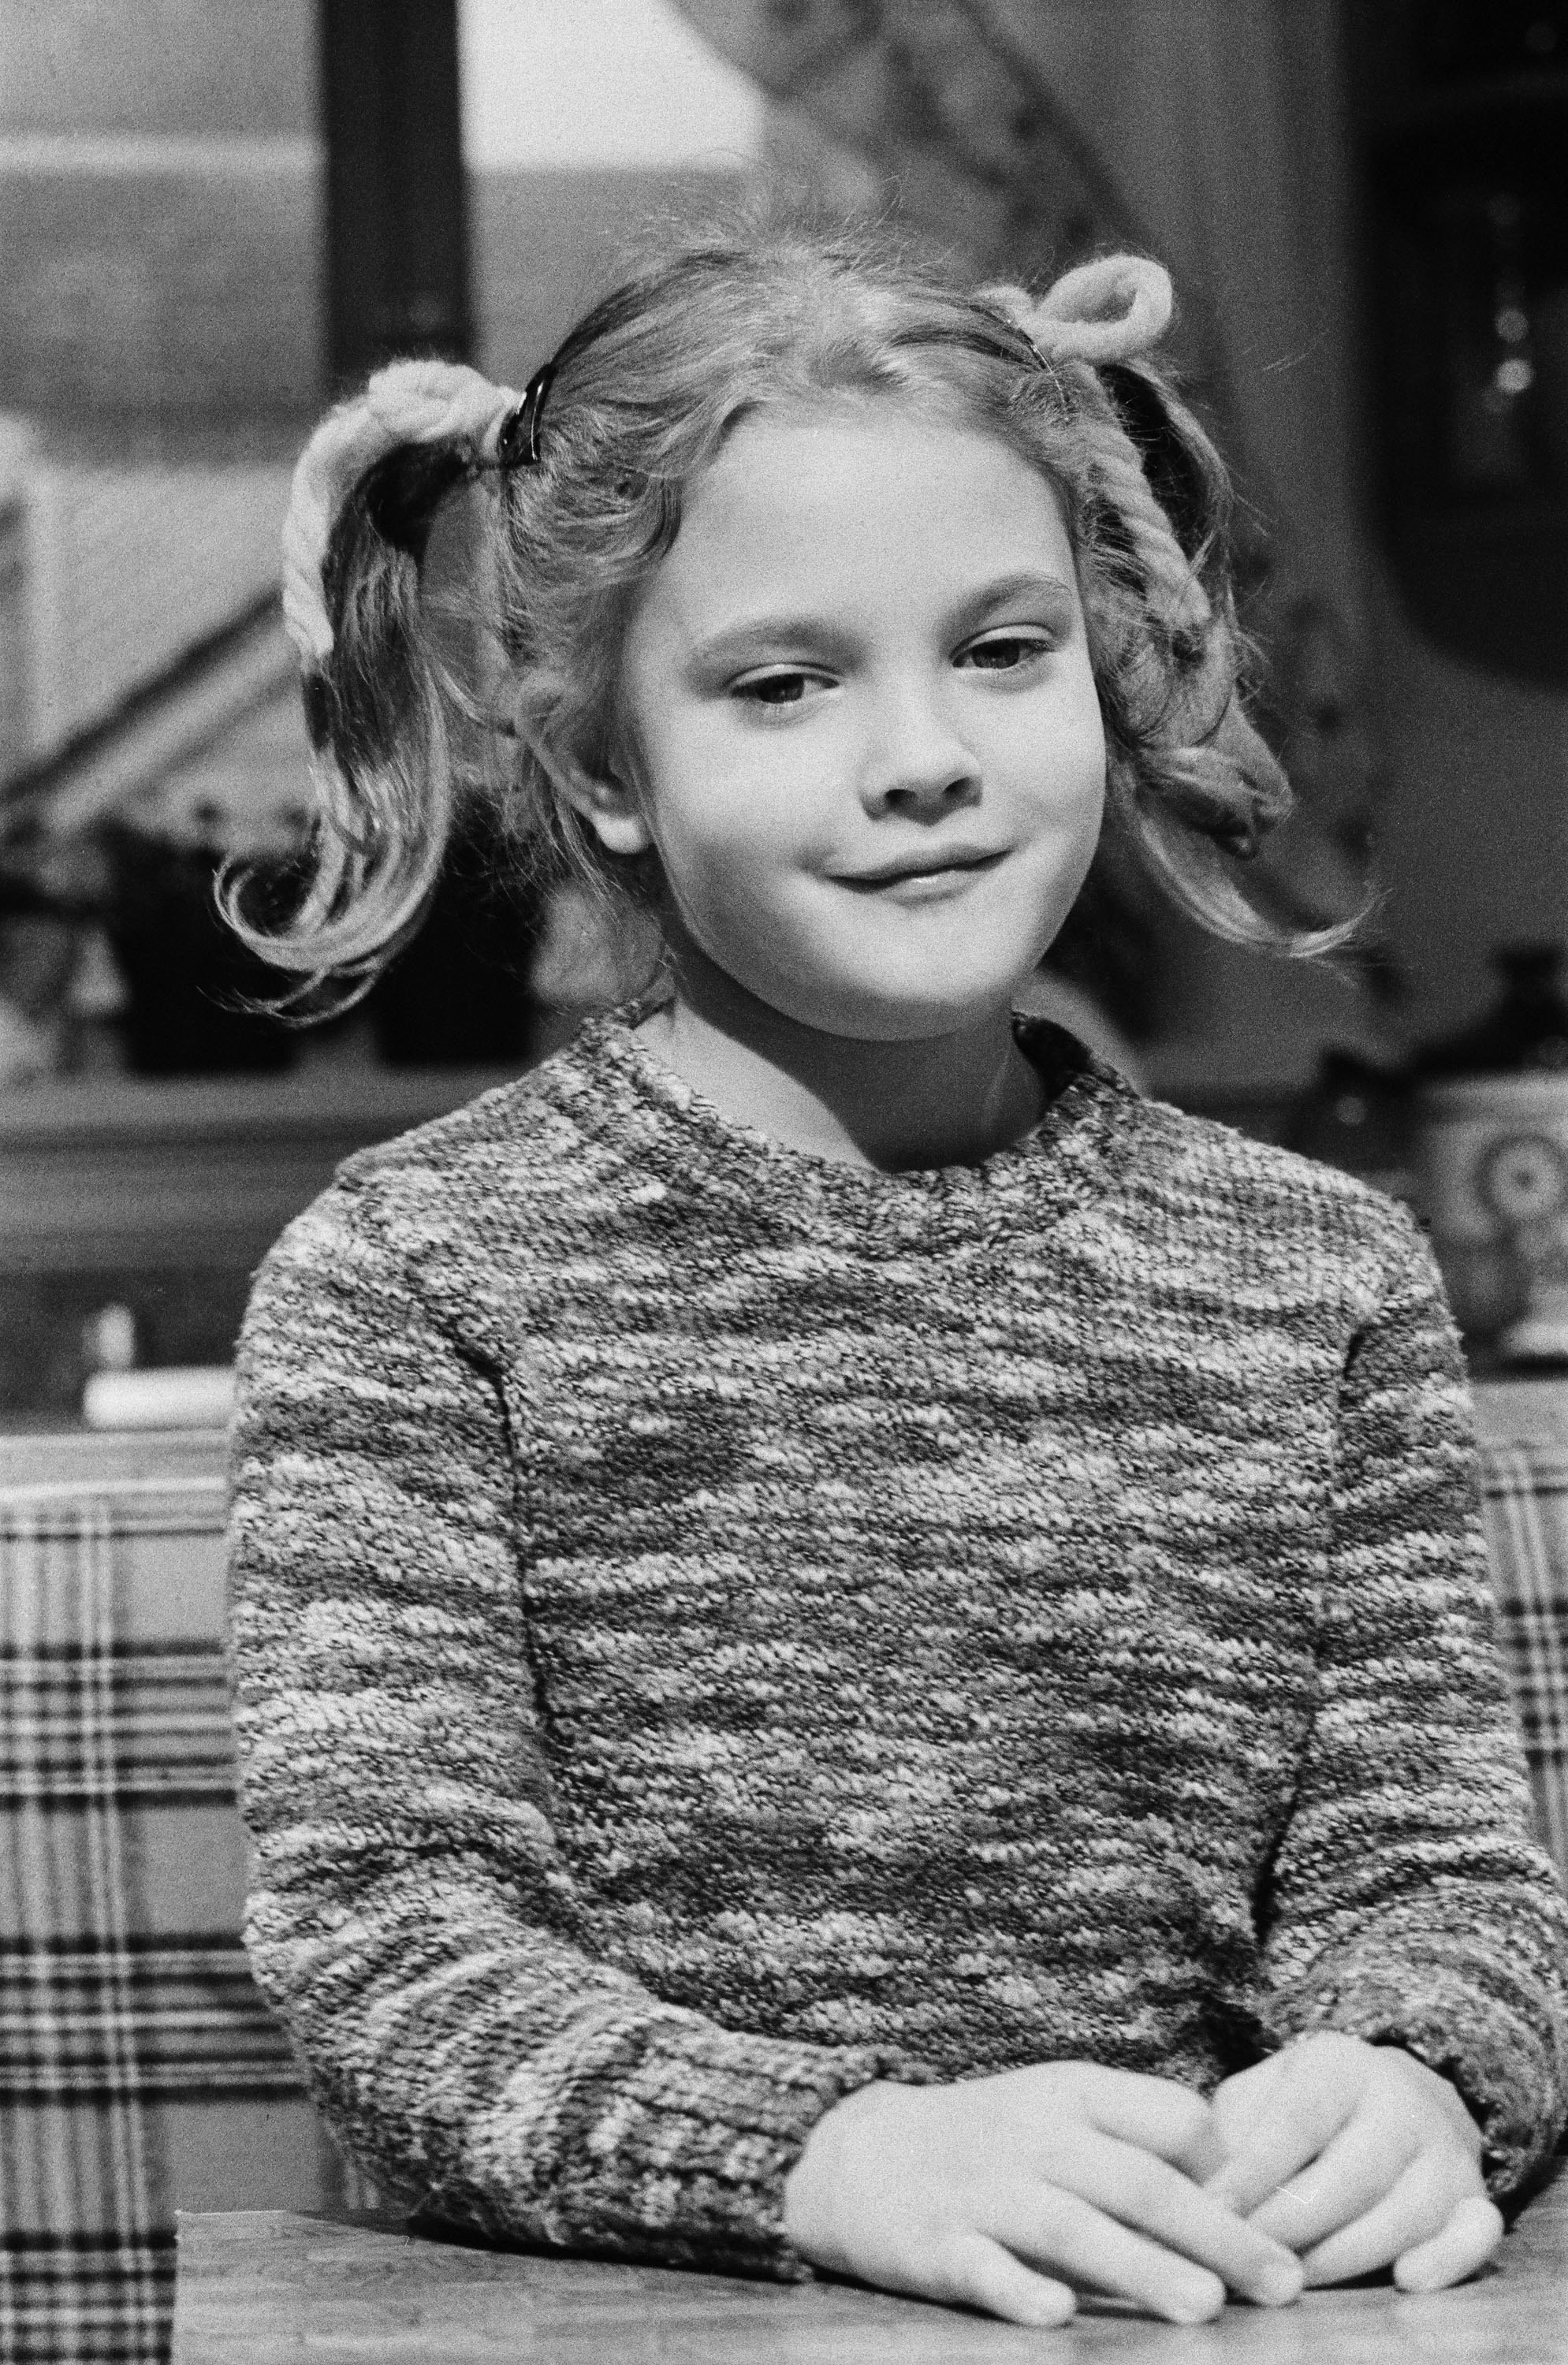 Drew Barrymore on SNL in 1982